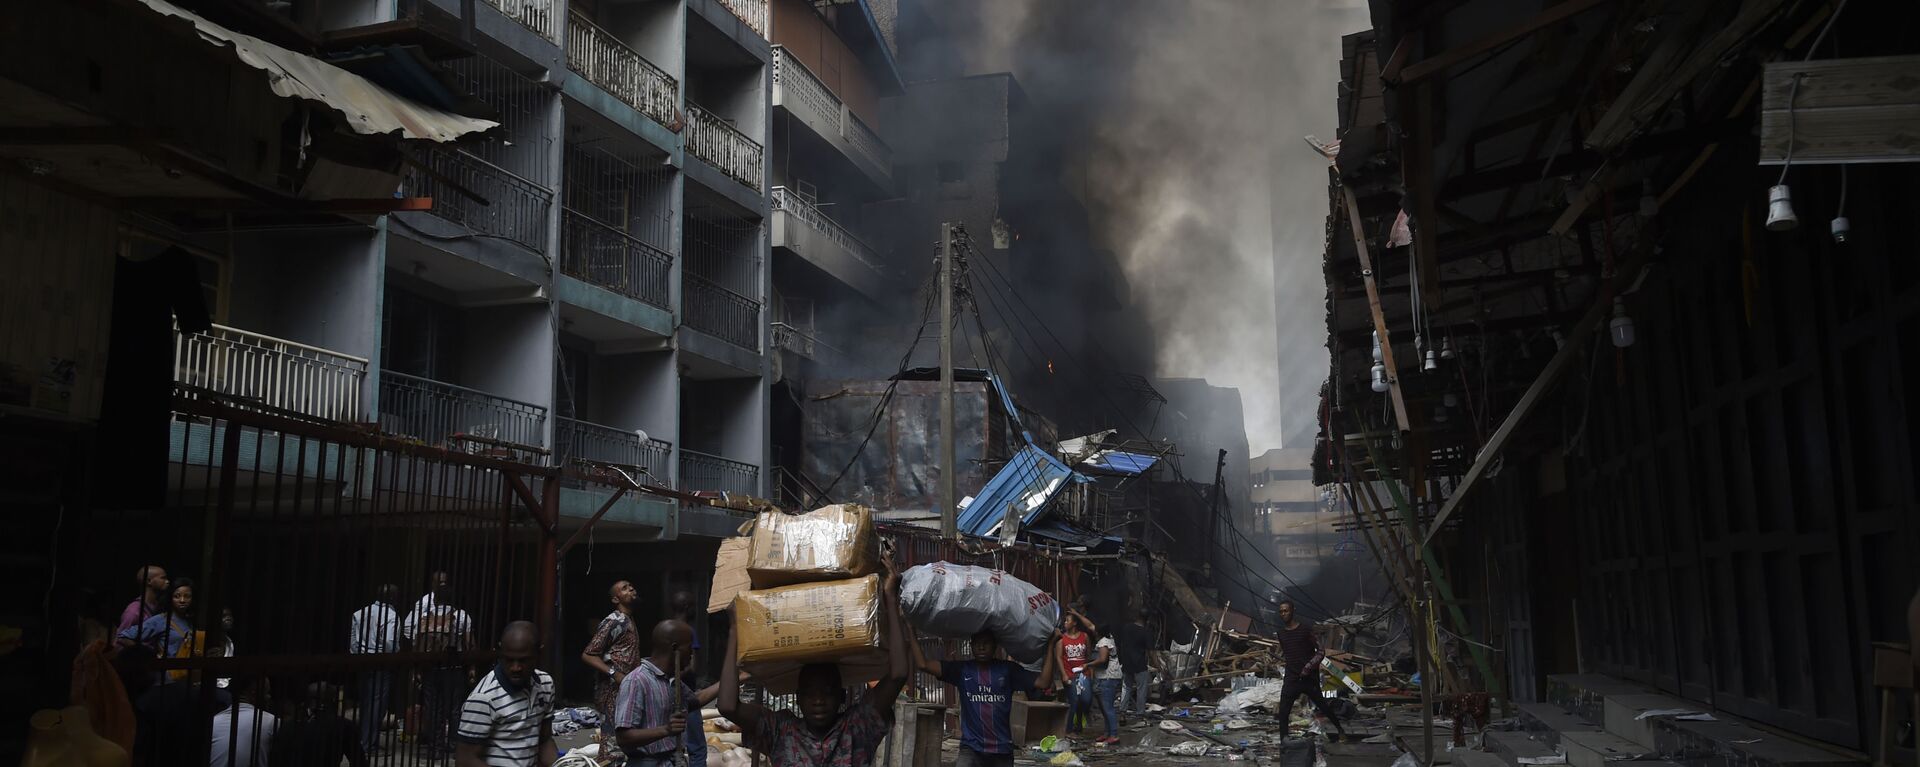 أهالي حي سوق بالوغون في لاغوس يحملون أغراضهم بعد أن تم اطفاء الحريق في المنطقة، نيجيريا 29 يناير 2020 - سبوتنيك عربي, 1920, 10.10.2021